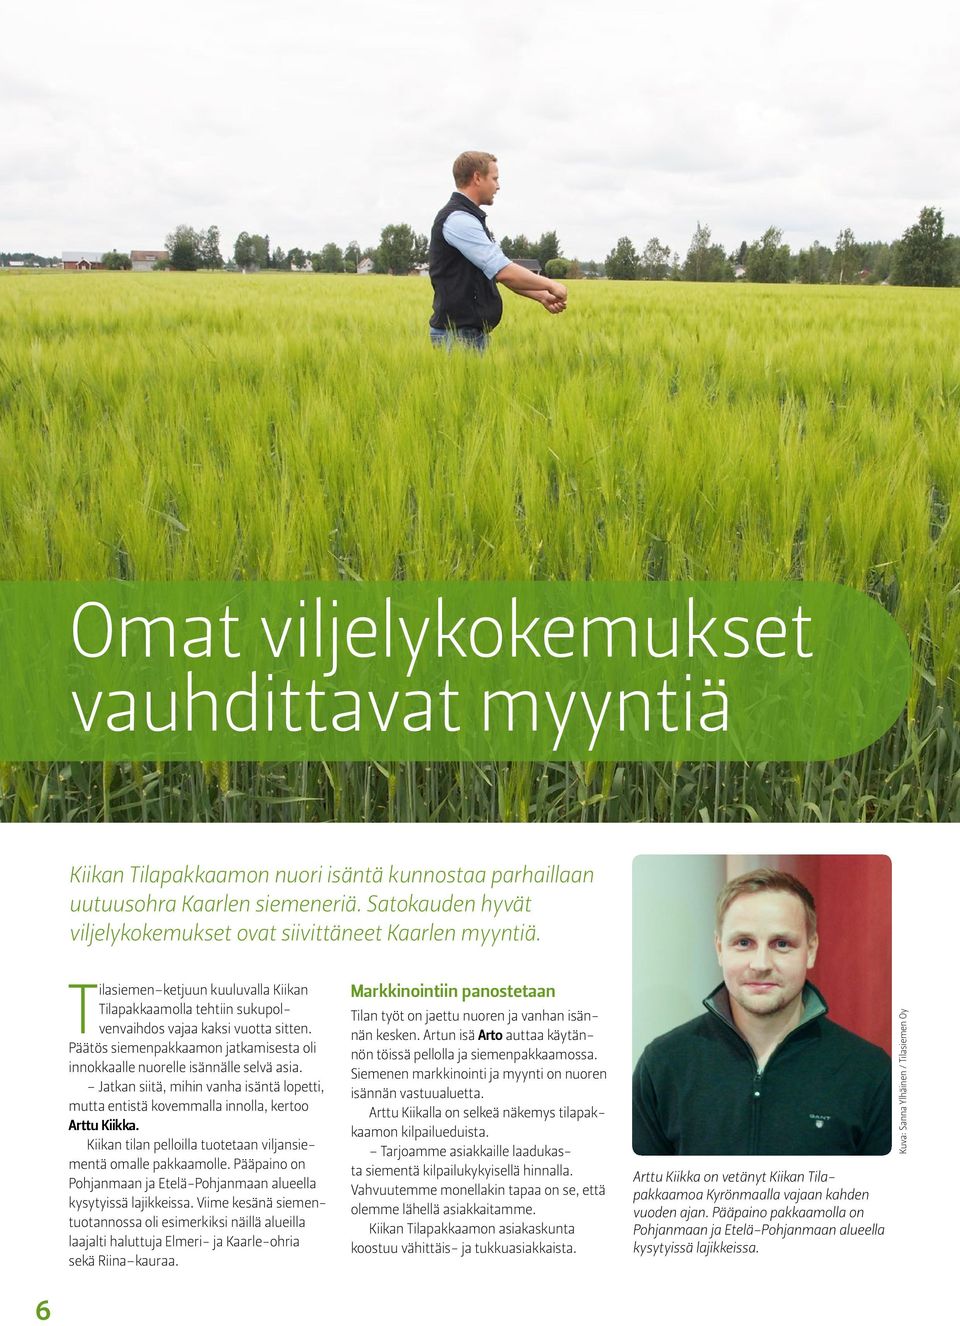 Jatkan siitä, mihin vanha isäntä lopetti, mutta entistä kovemmalla innolla, kertoo Arttu Kiikka. Kiikan tilan pelloilla tuotetaan viljansiementä omalle pakkaamolle.